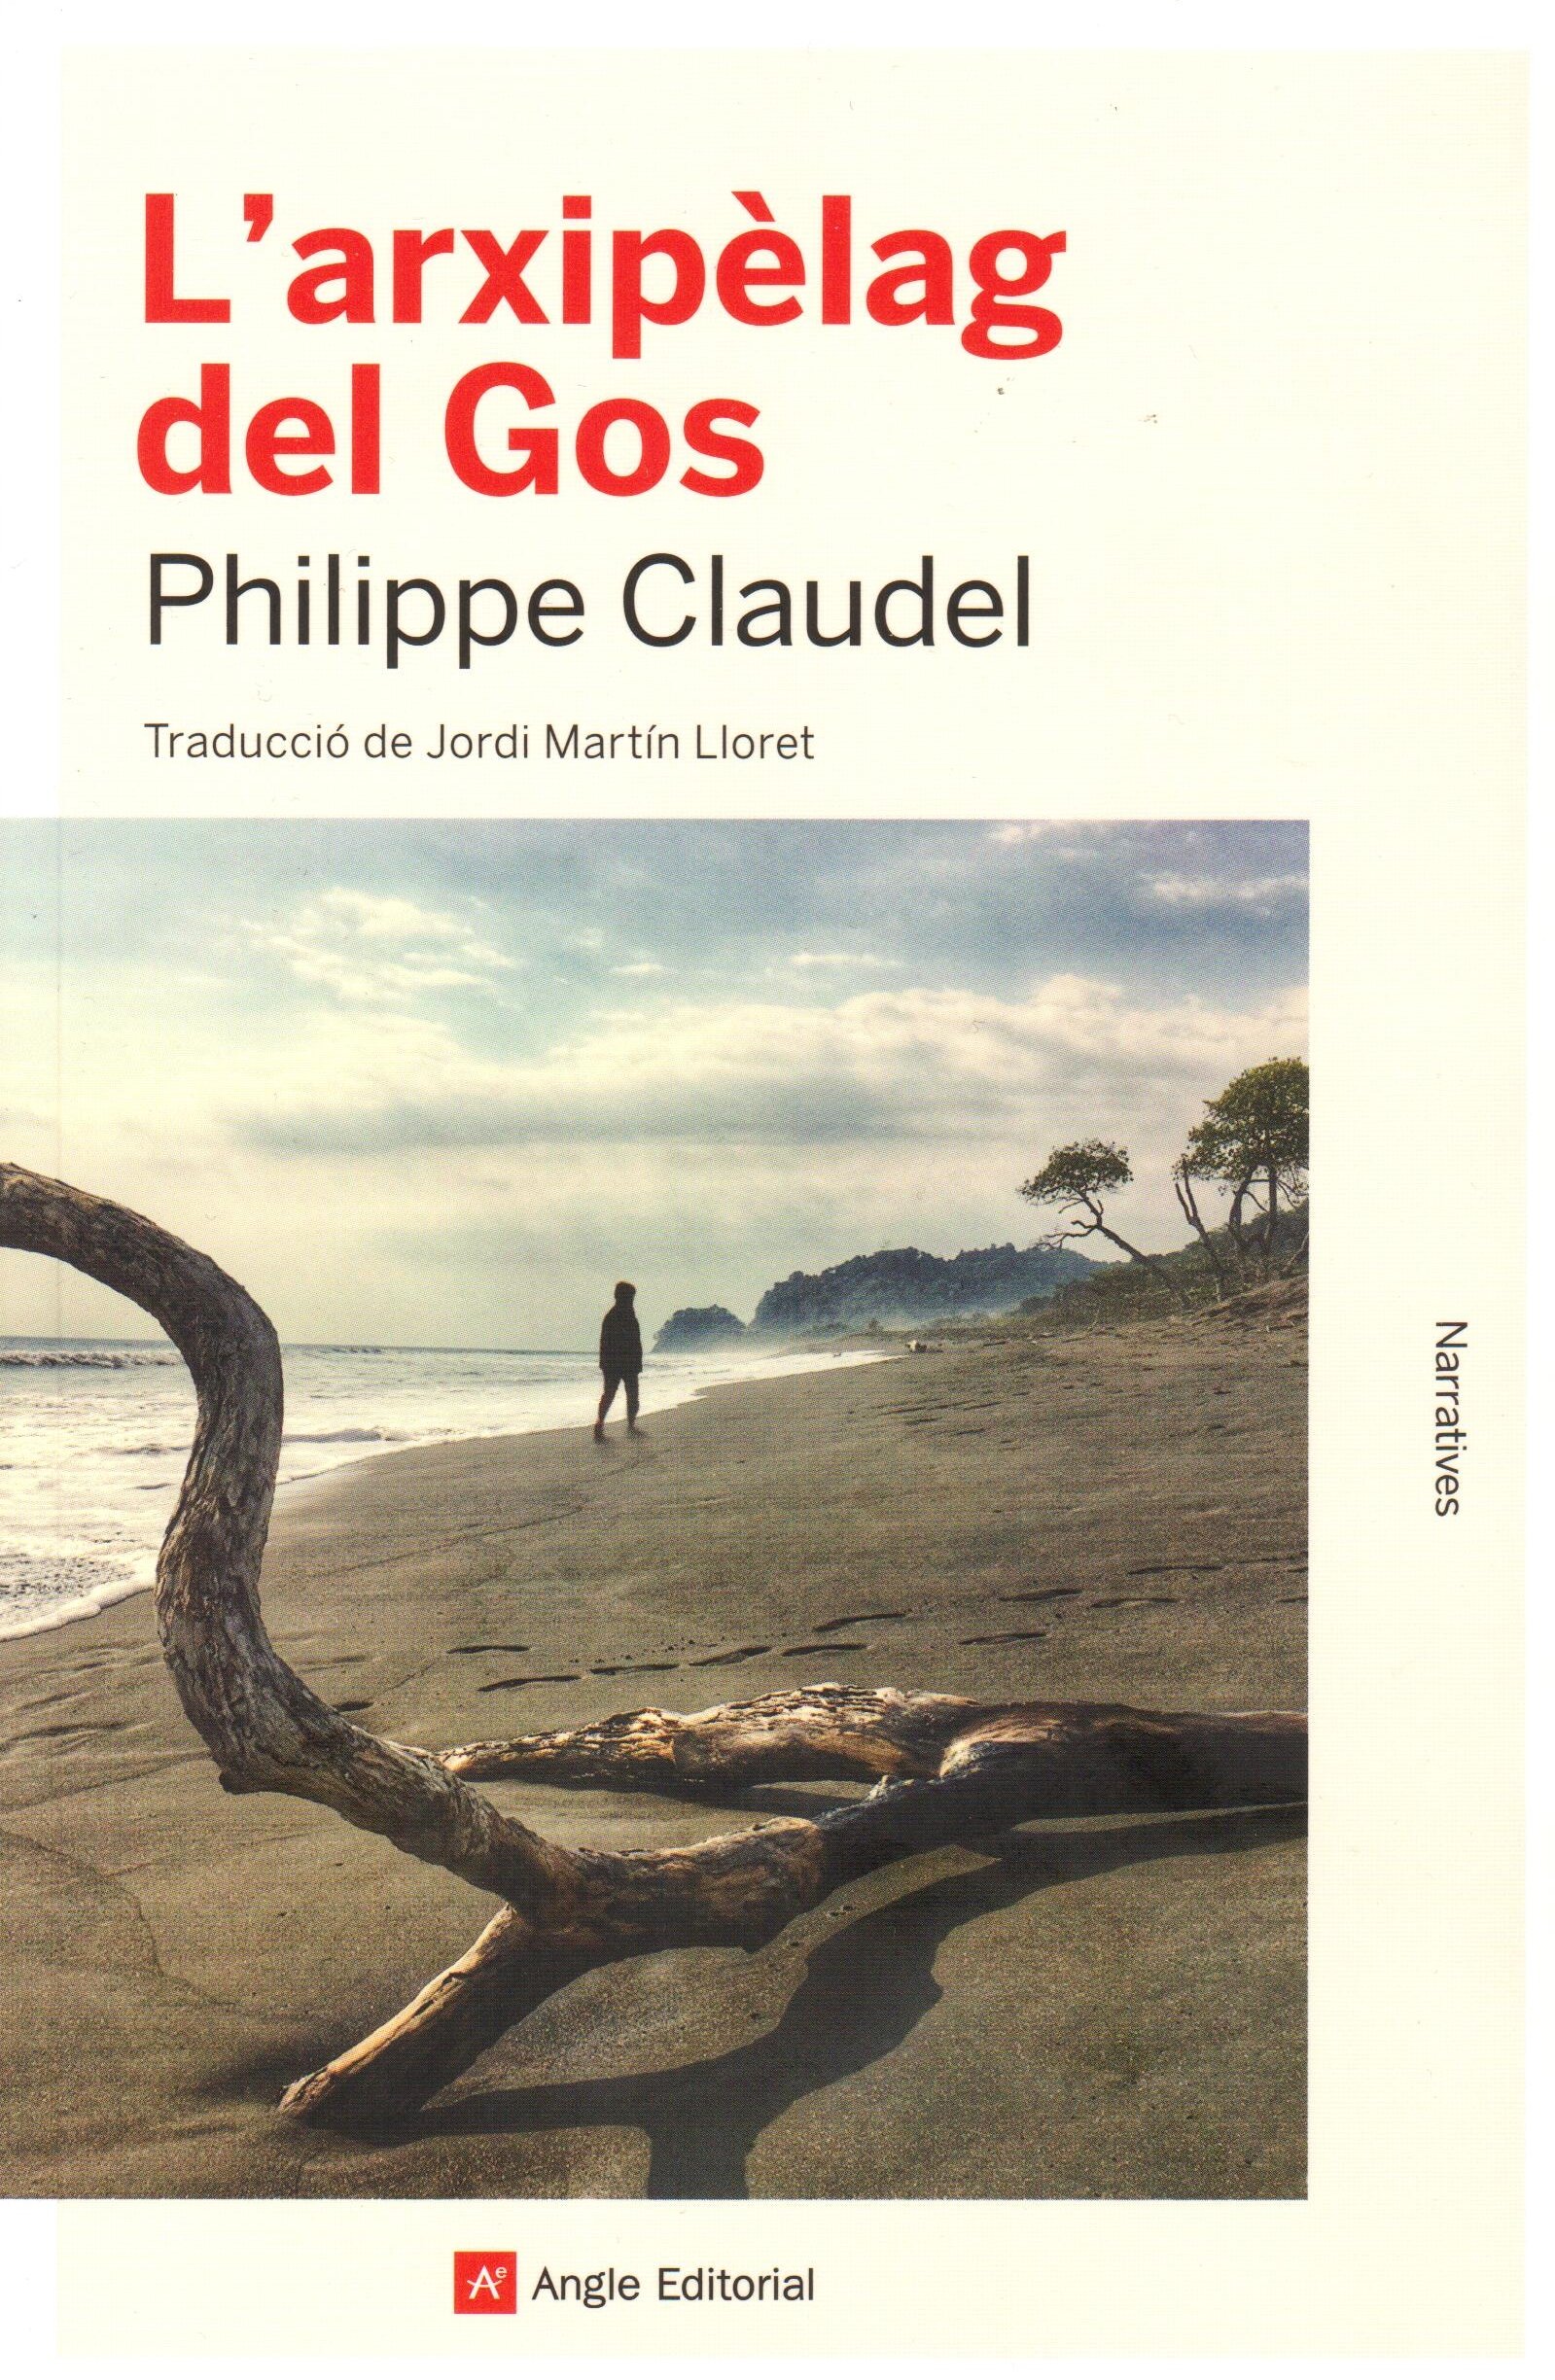 Philippe Claudel, 'L'arxipèlag del Gos'. Angle, 106 p., 18 €.